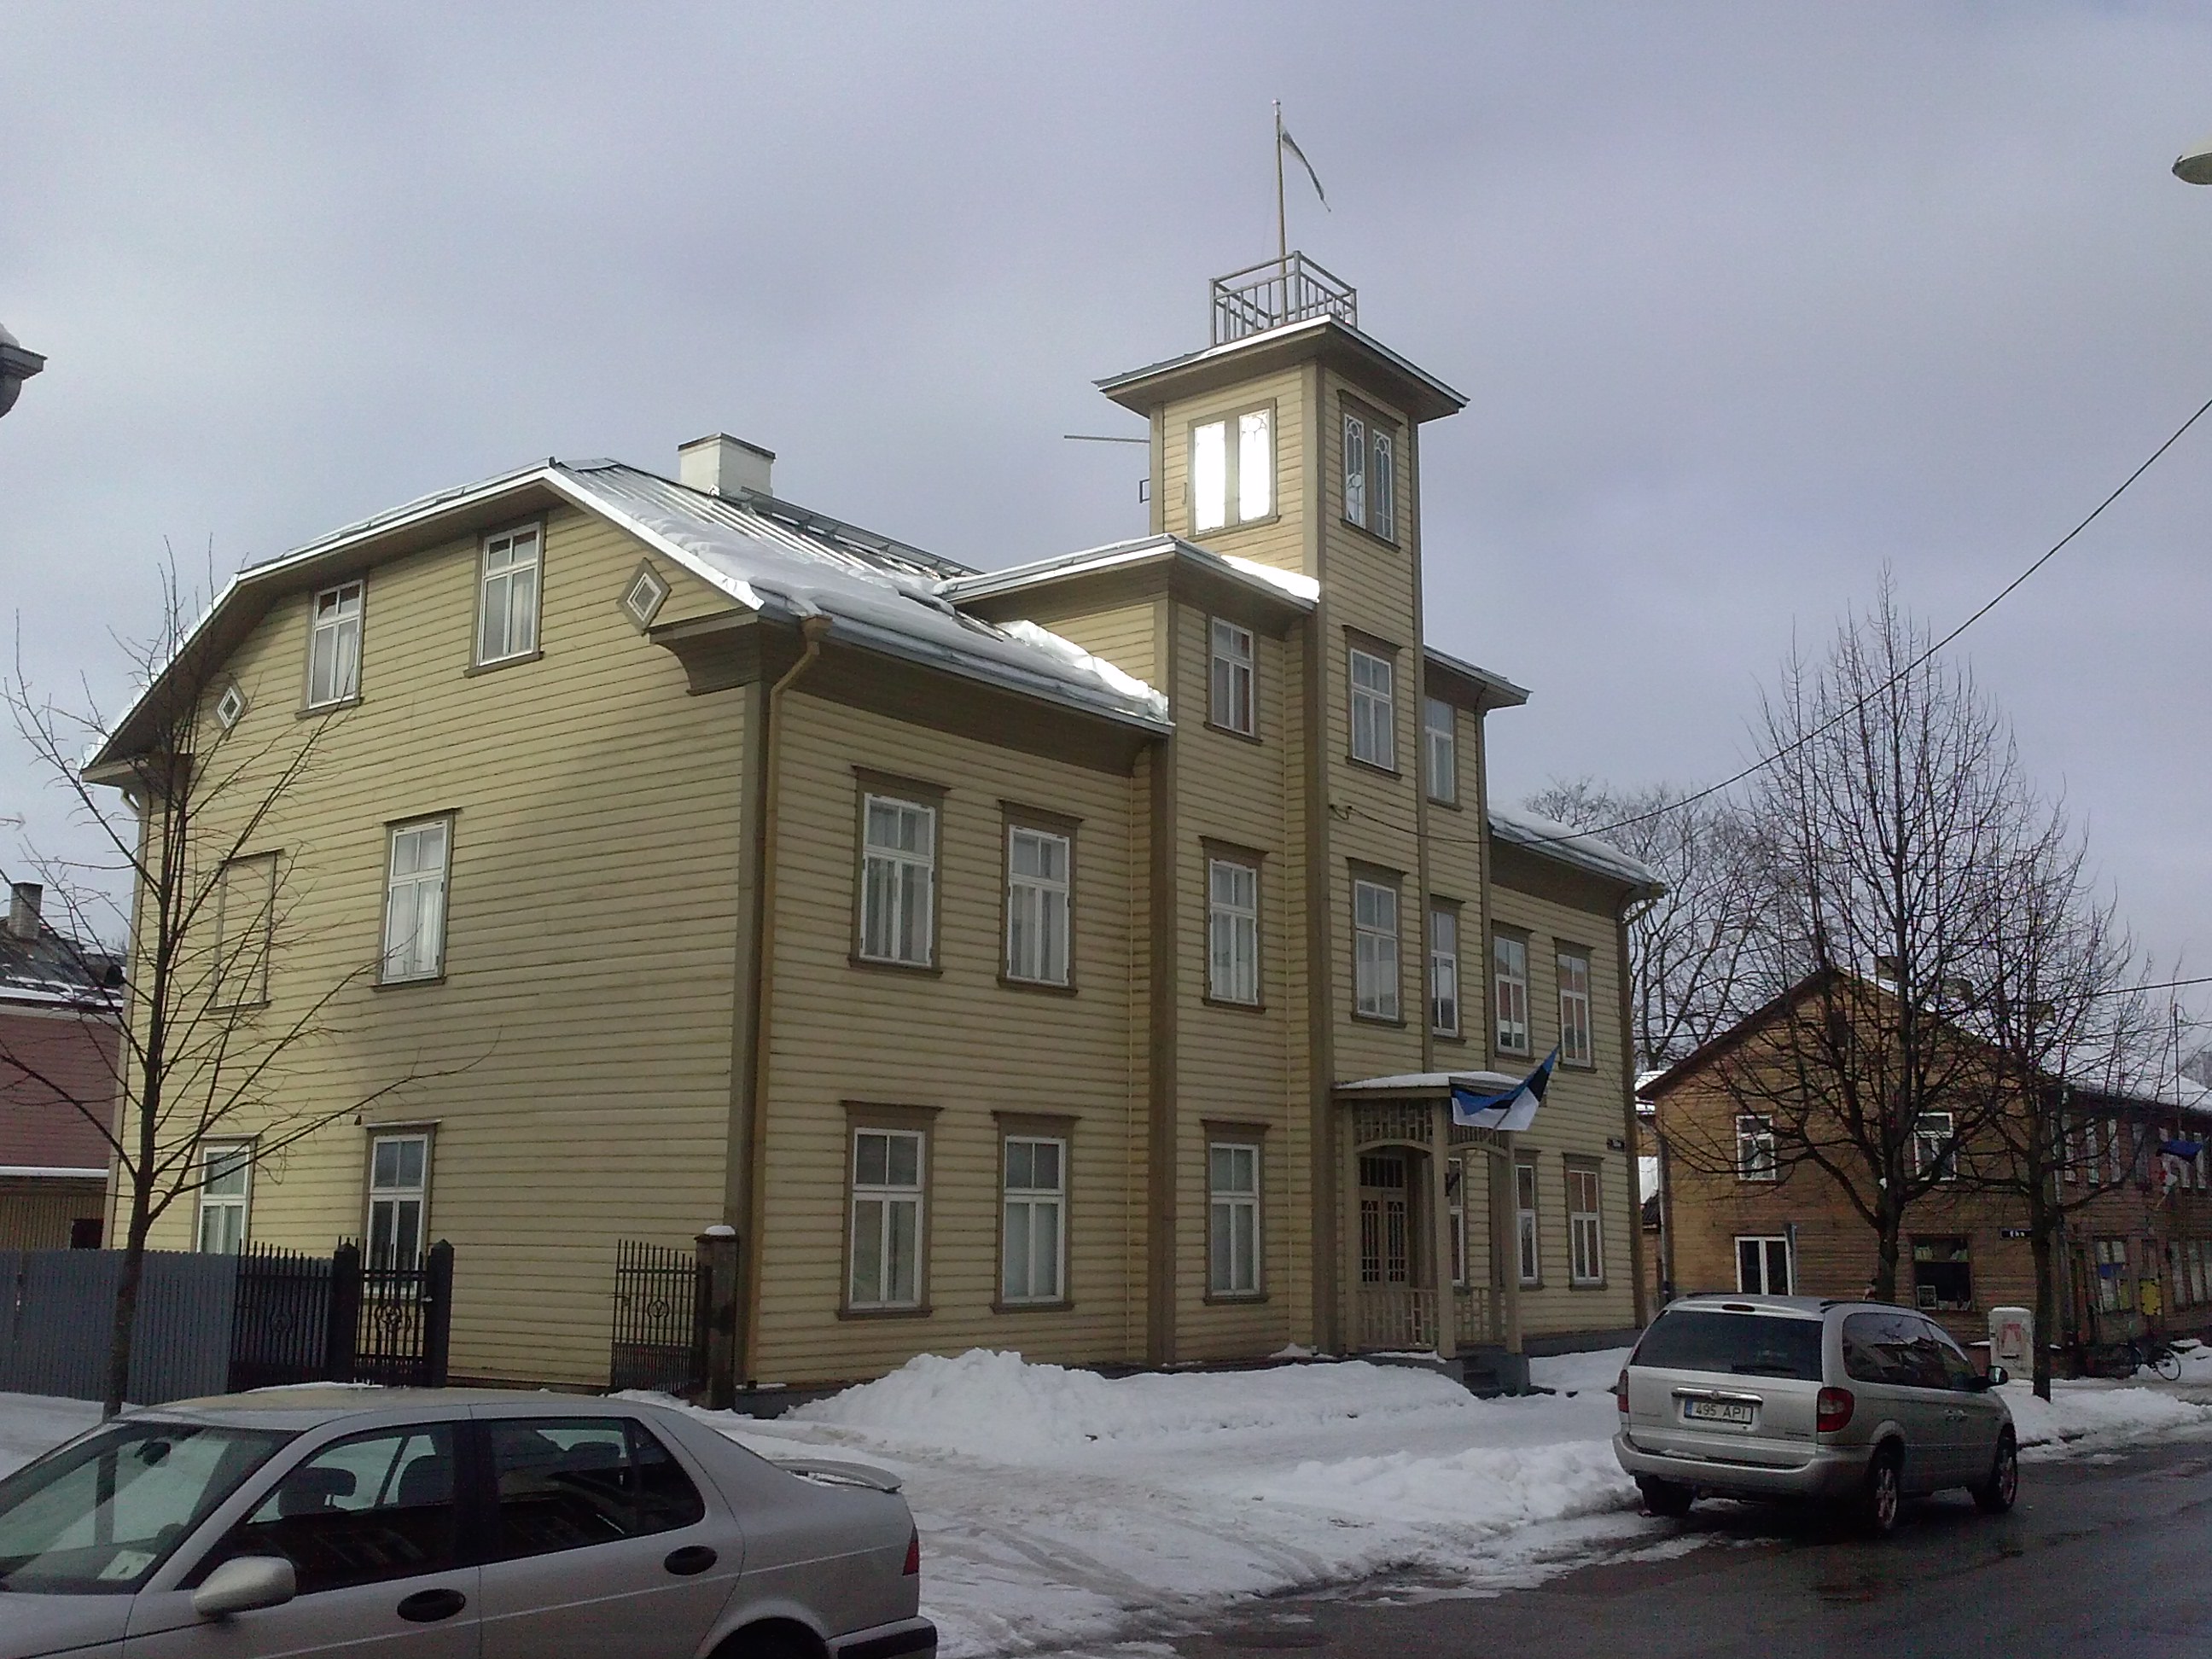 Tartu, Star 31, built around 1910. rephoto